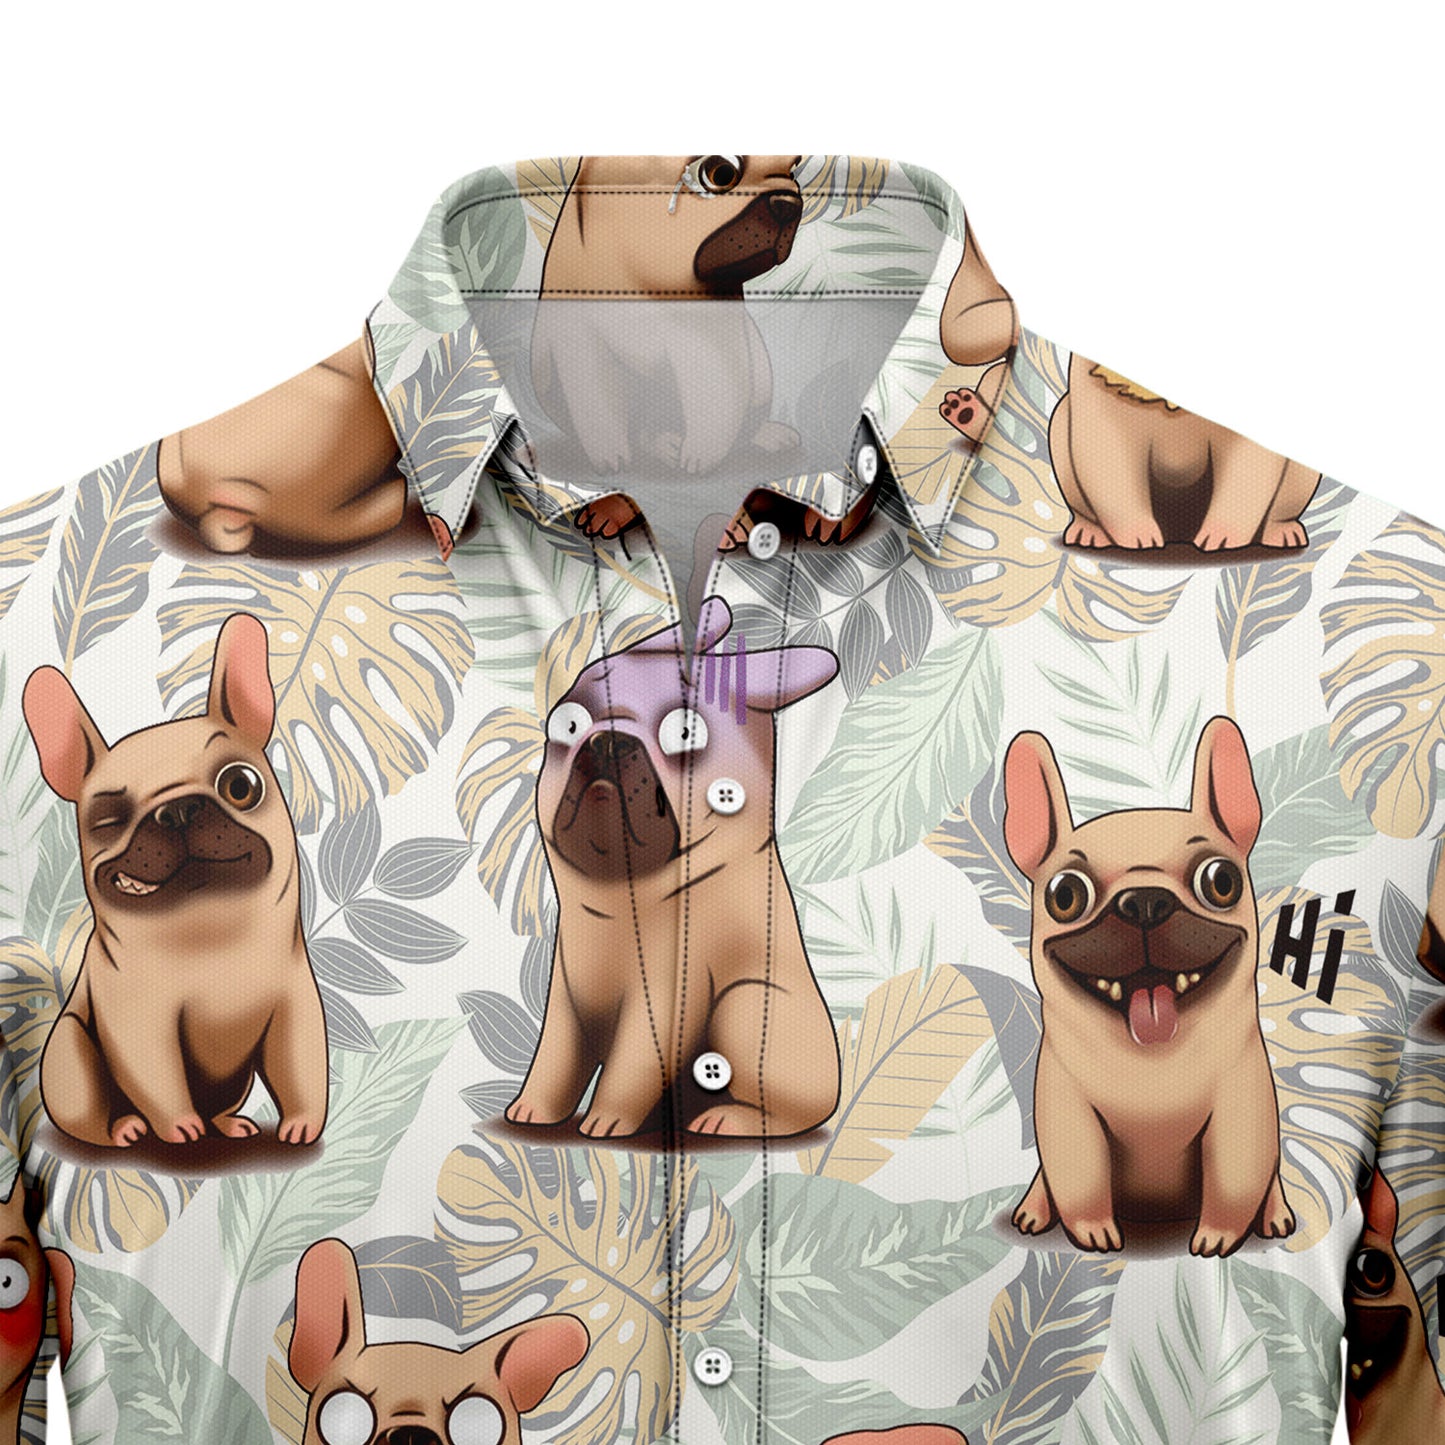 French Bulldog Life G5724 Hawaiian Shirt